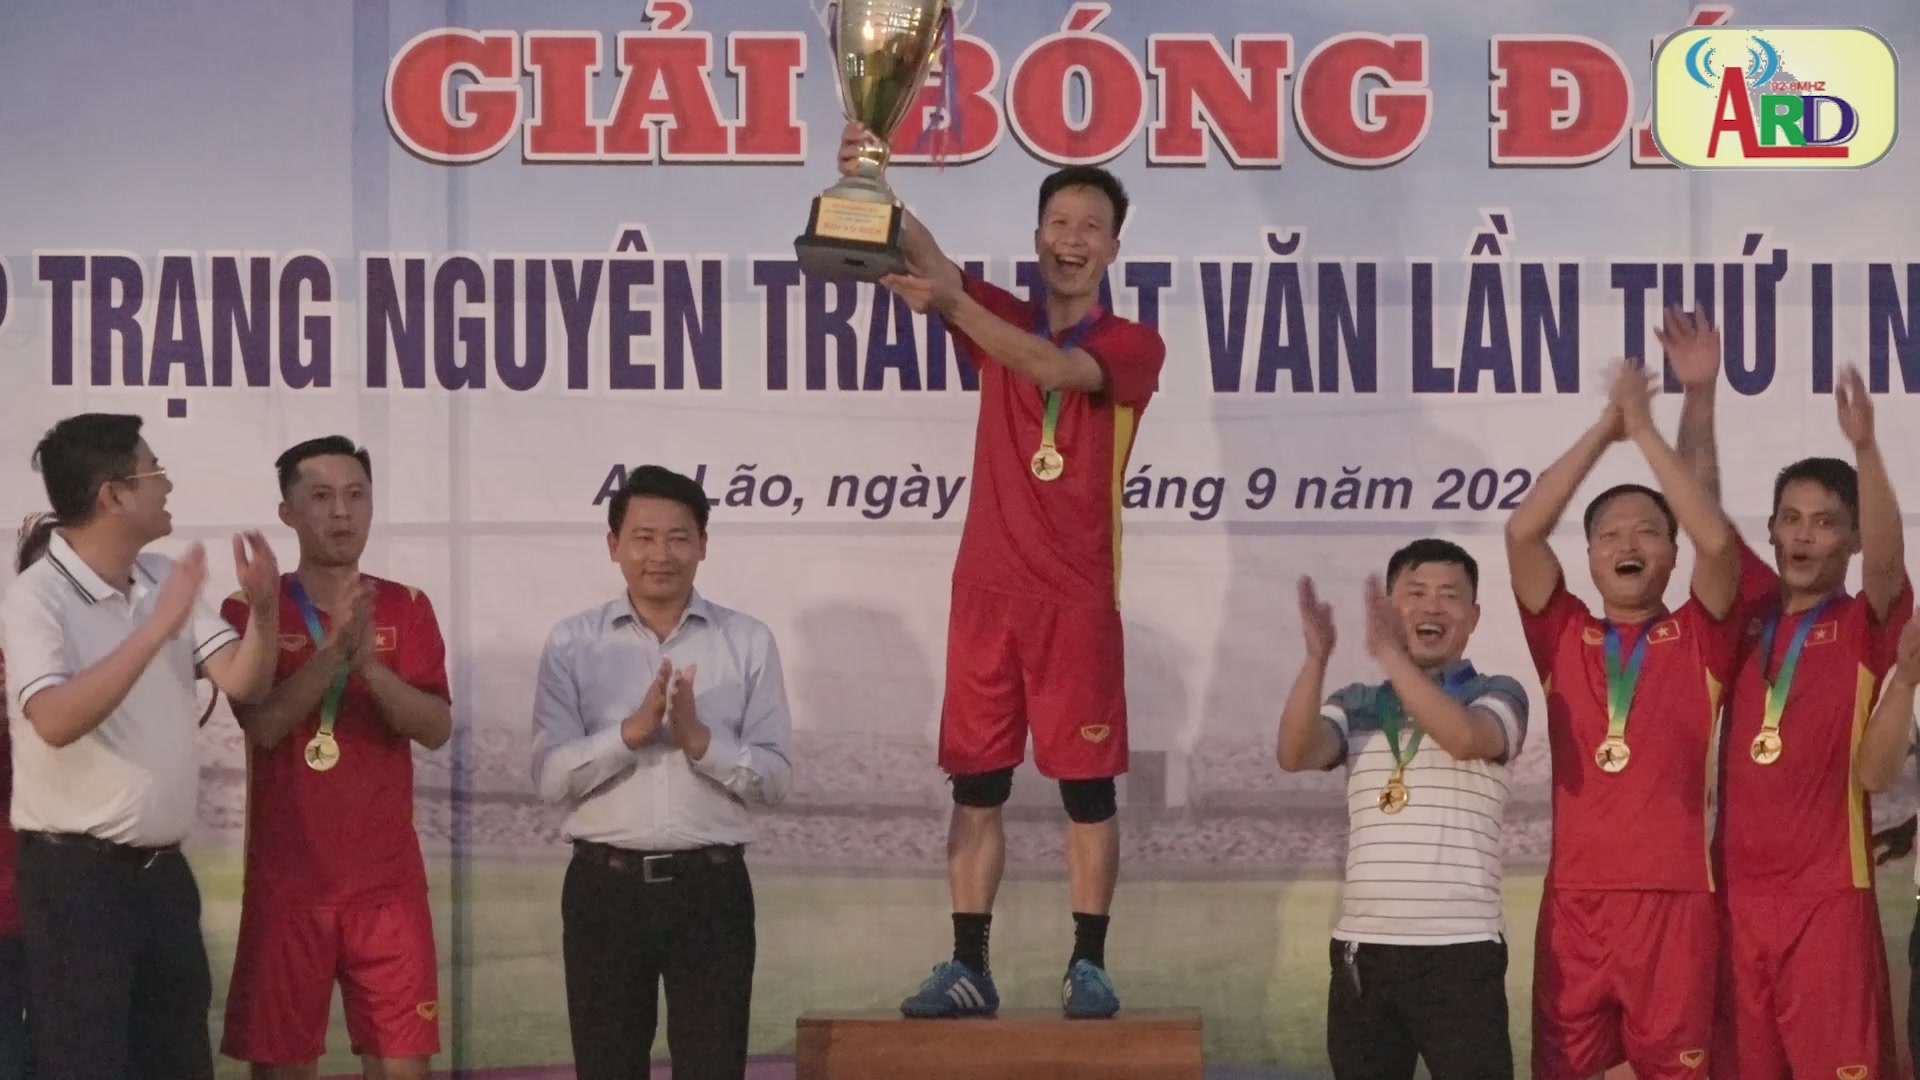 Chung kết và trao giải cúp bóng đá Trang nguyên Trần Tất Văn lần thứ nhất năm 2022 